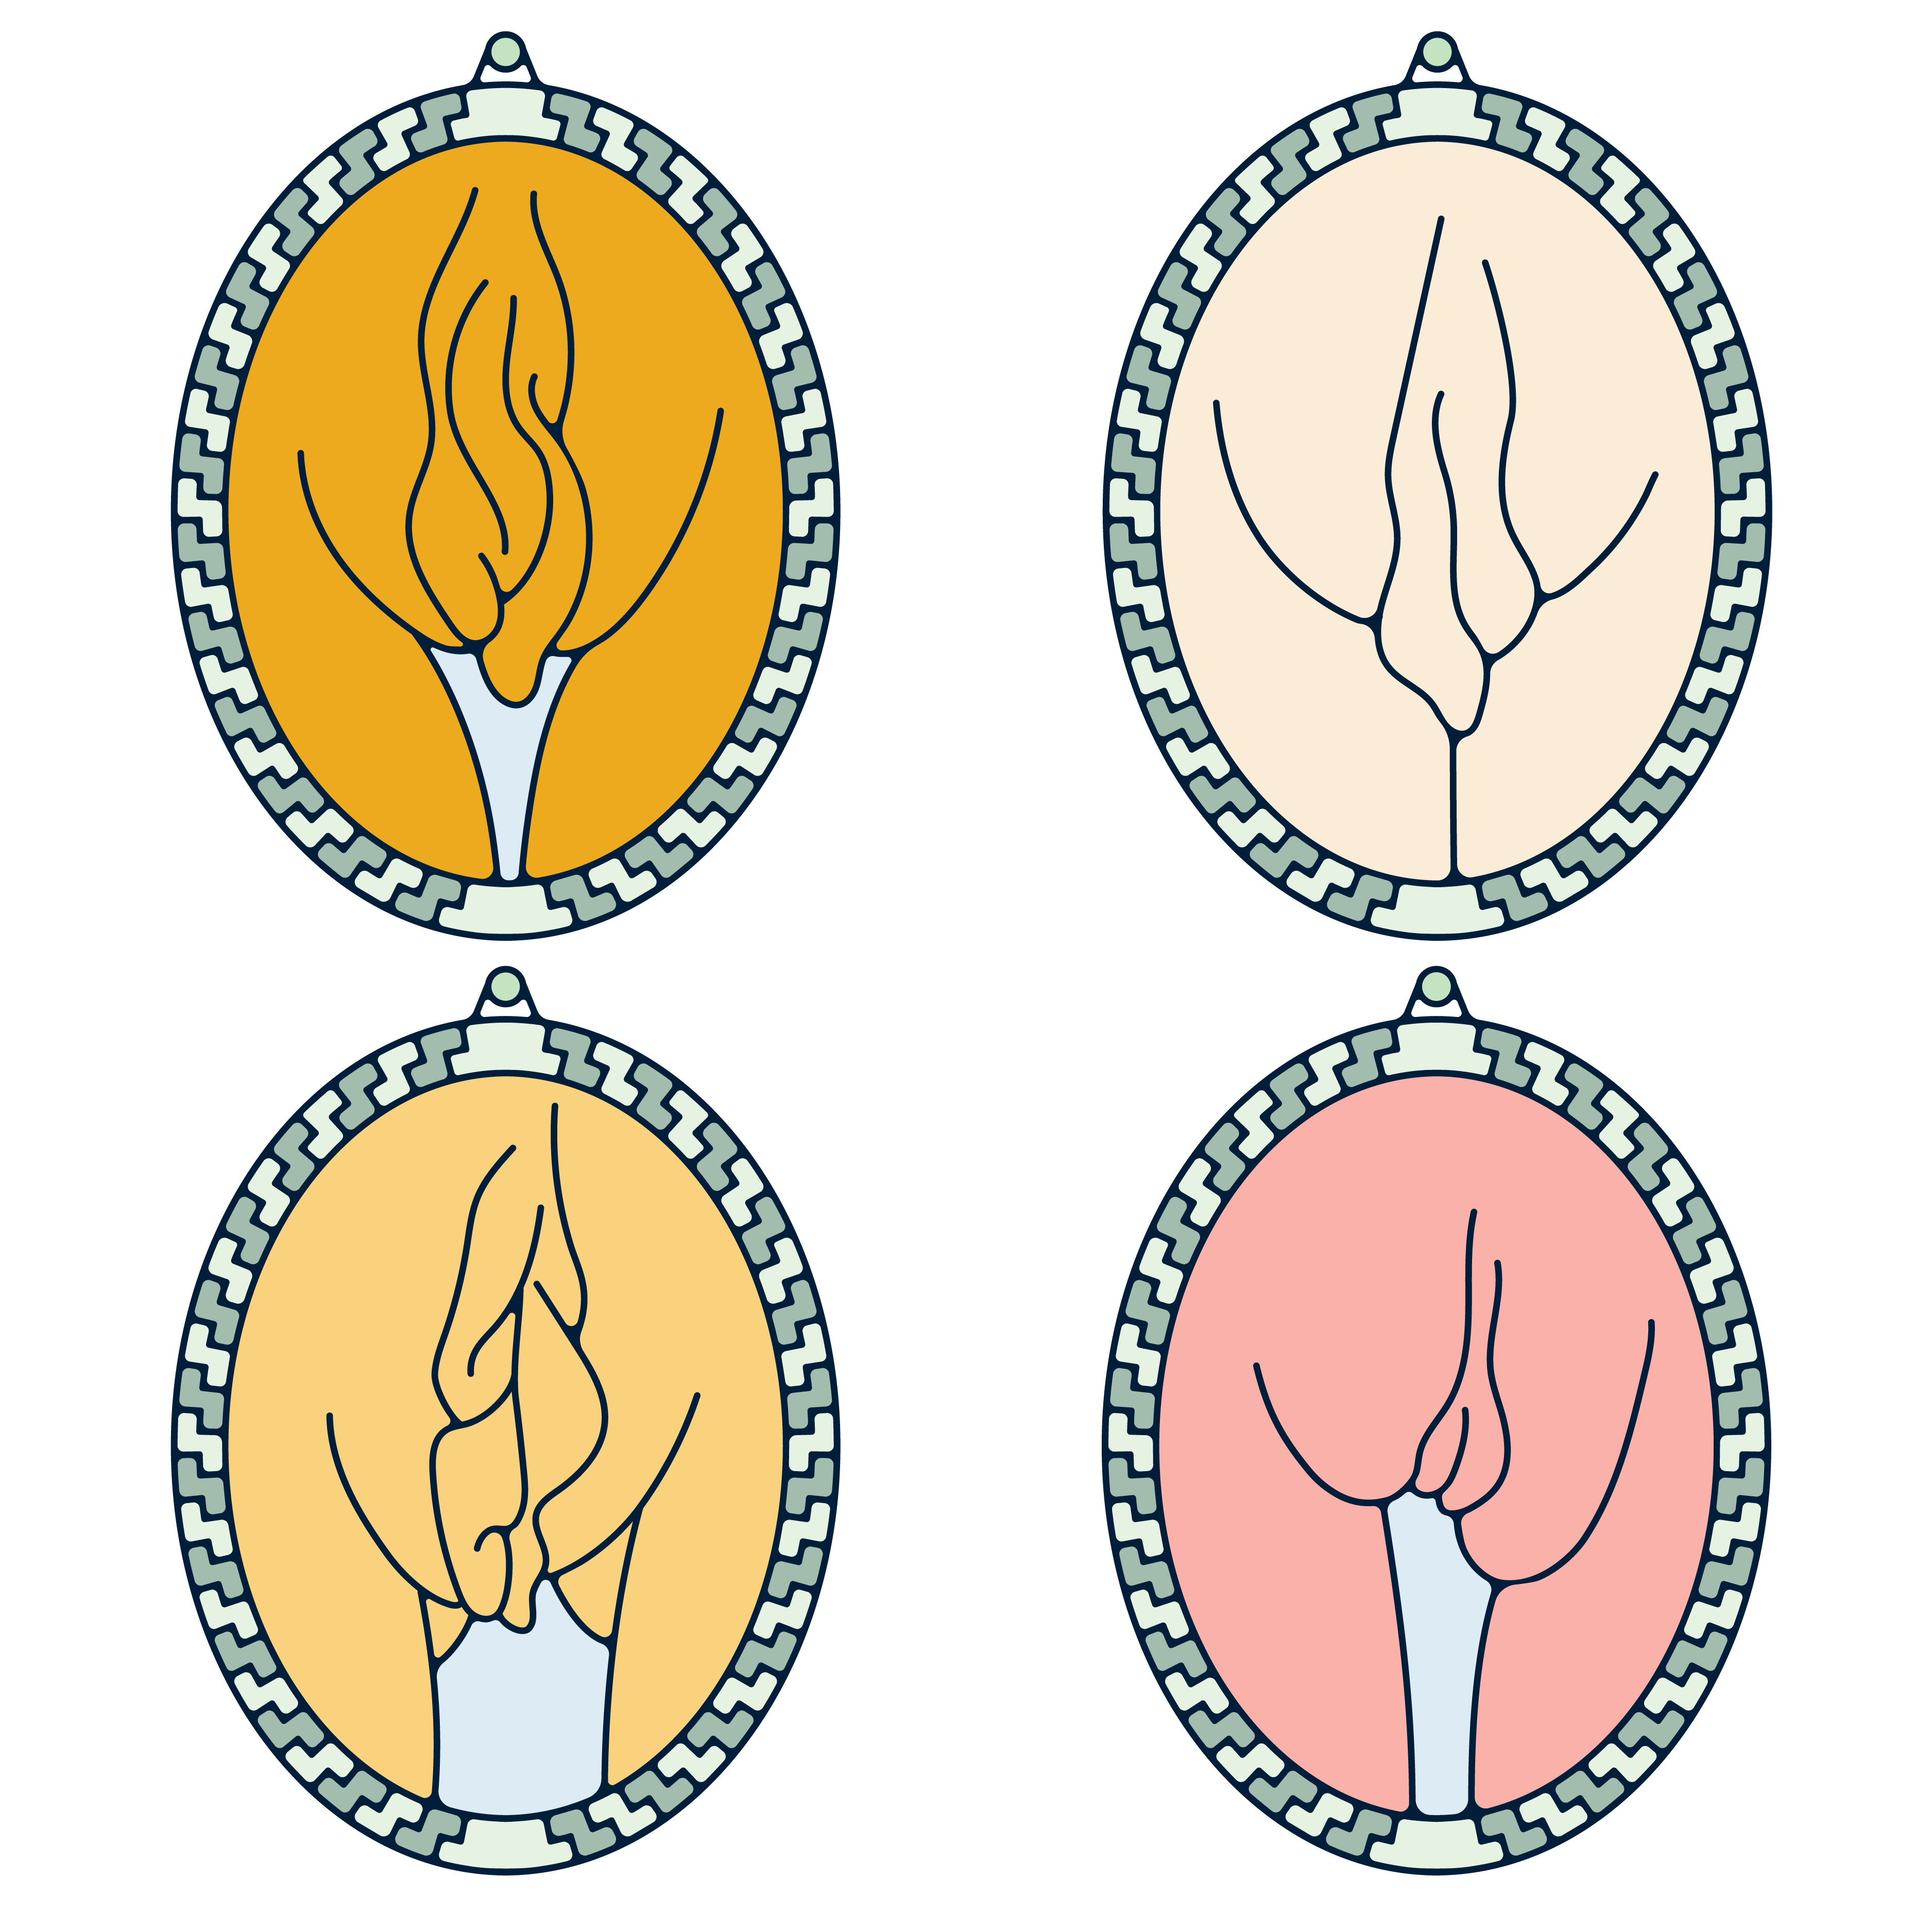 Vulva shapes 